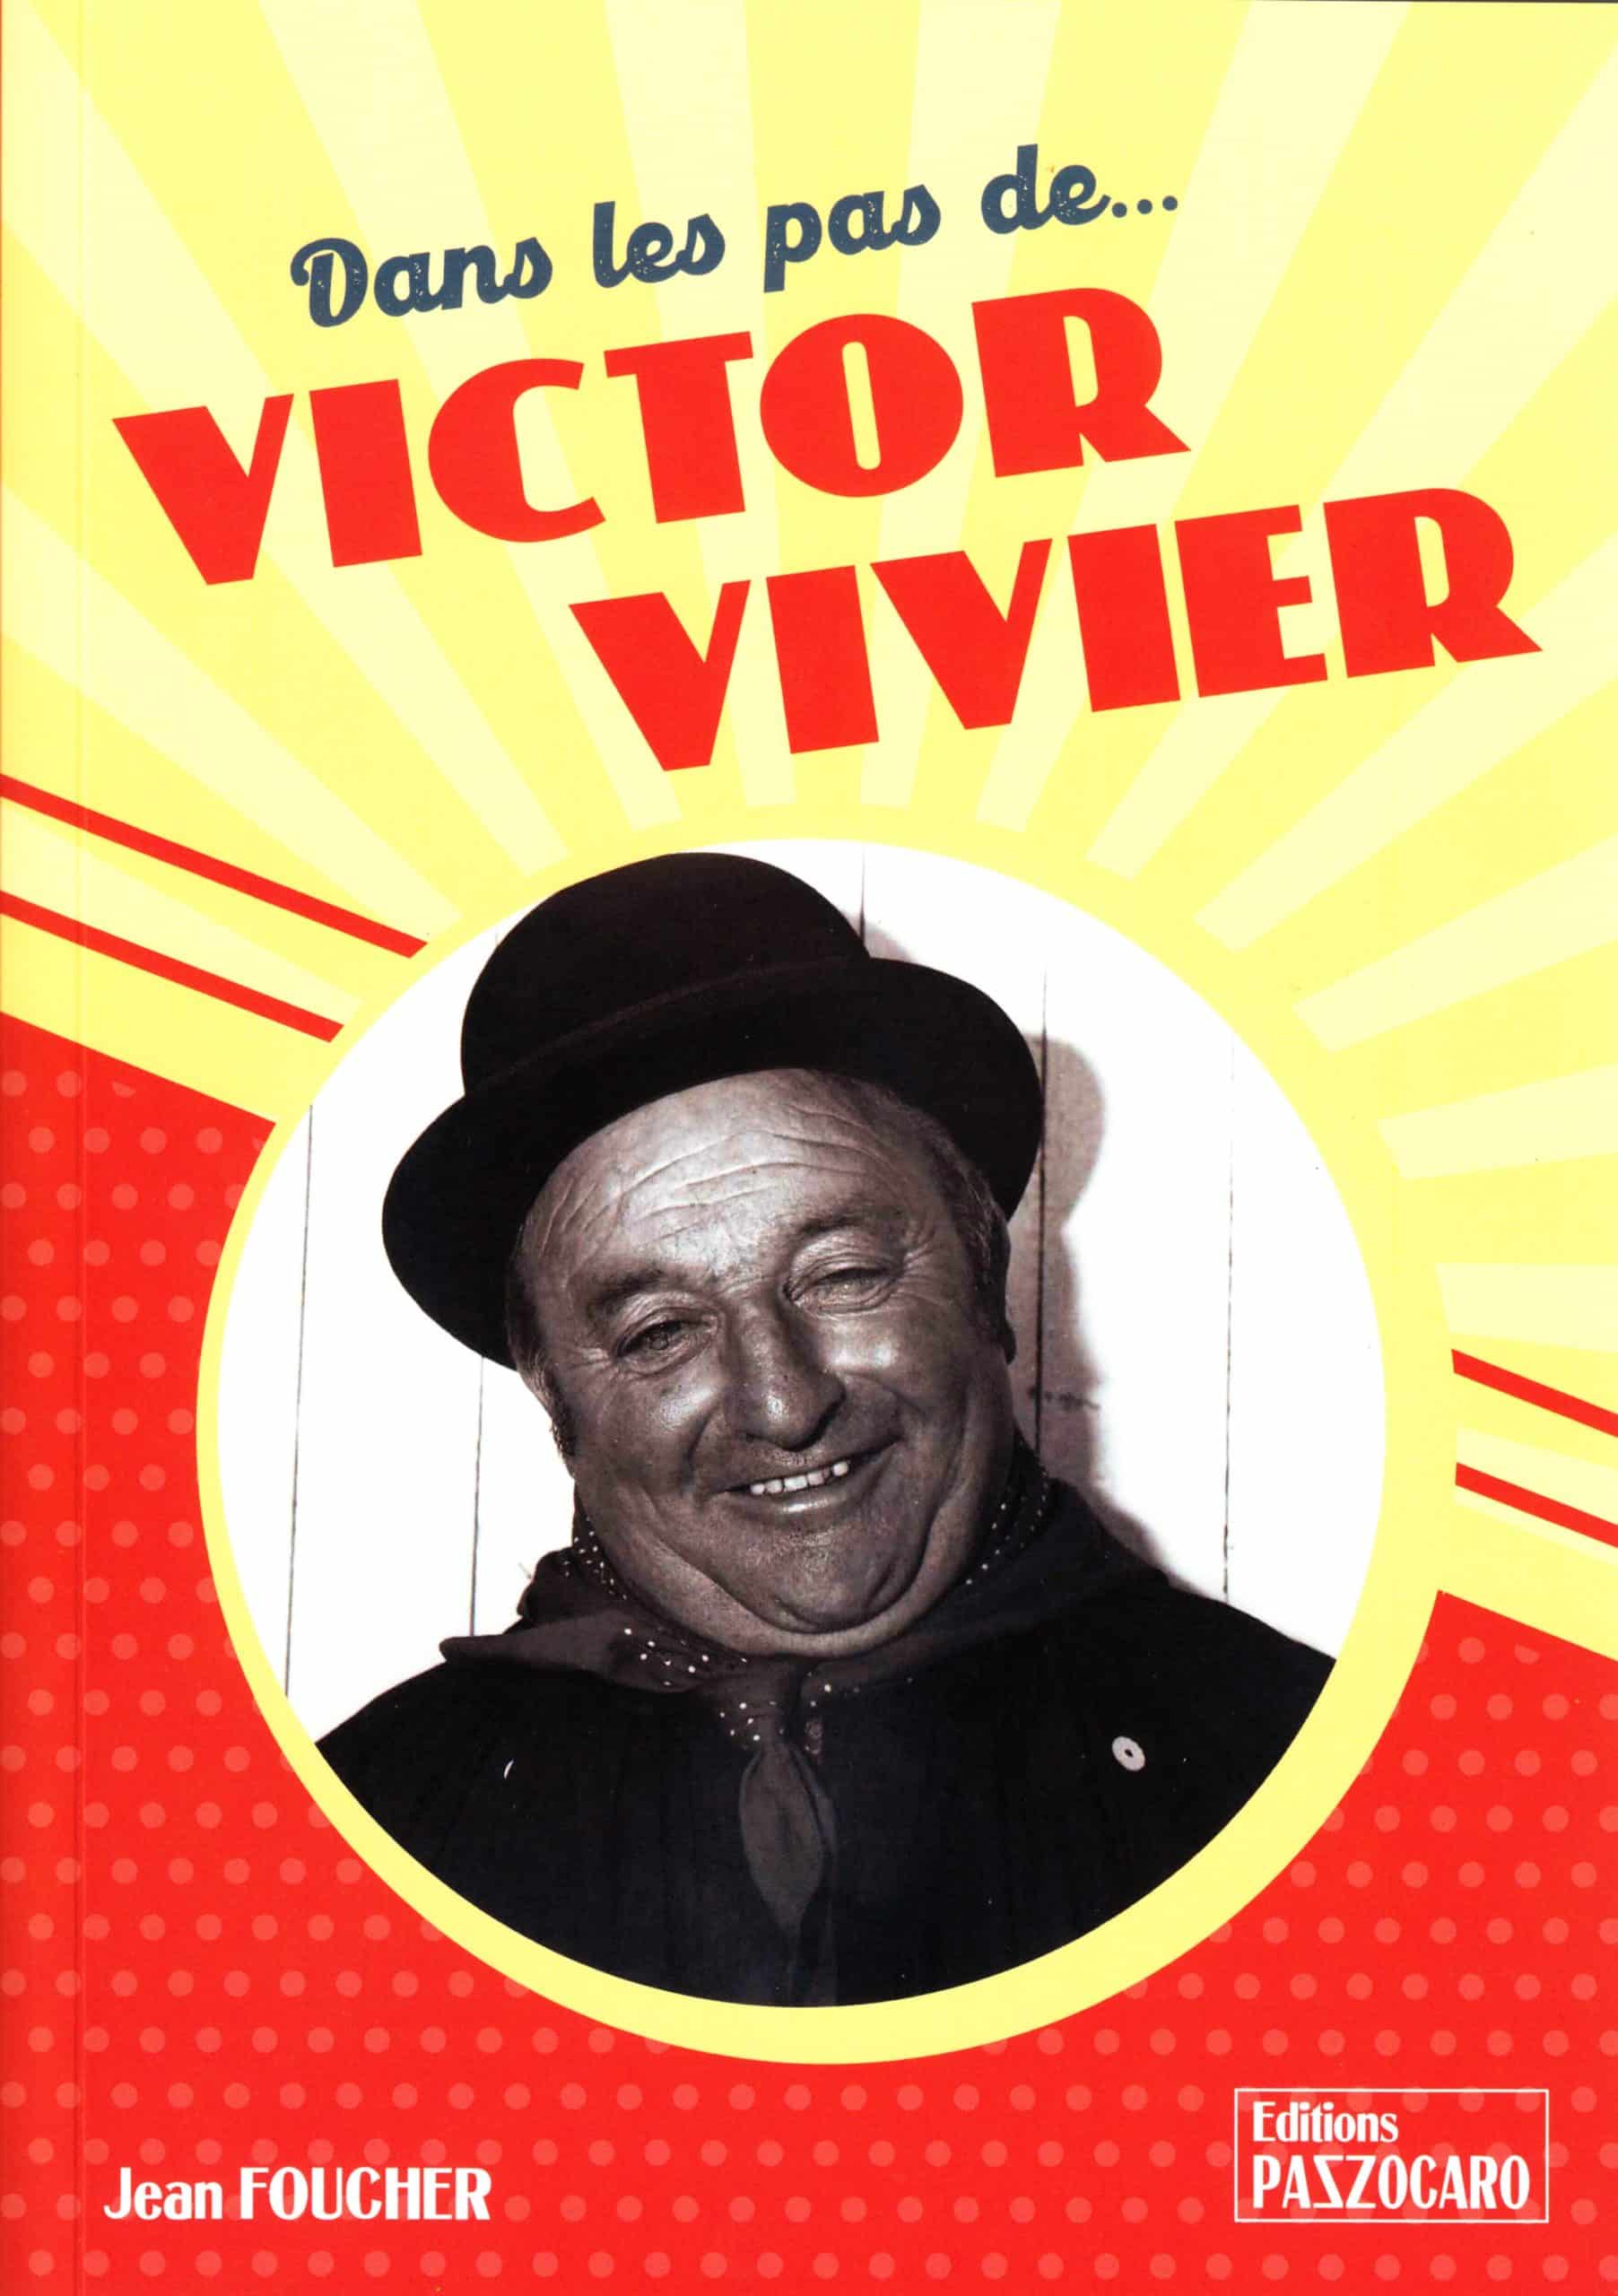 Bourré d’anecdotes, avec en prime des vidéos inédites et son dernier CD, ce livre sur Victor Vivier se parcourt avec délice.